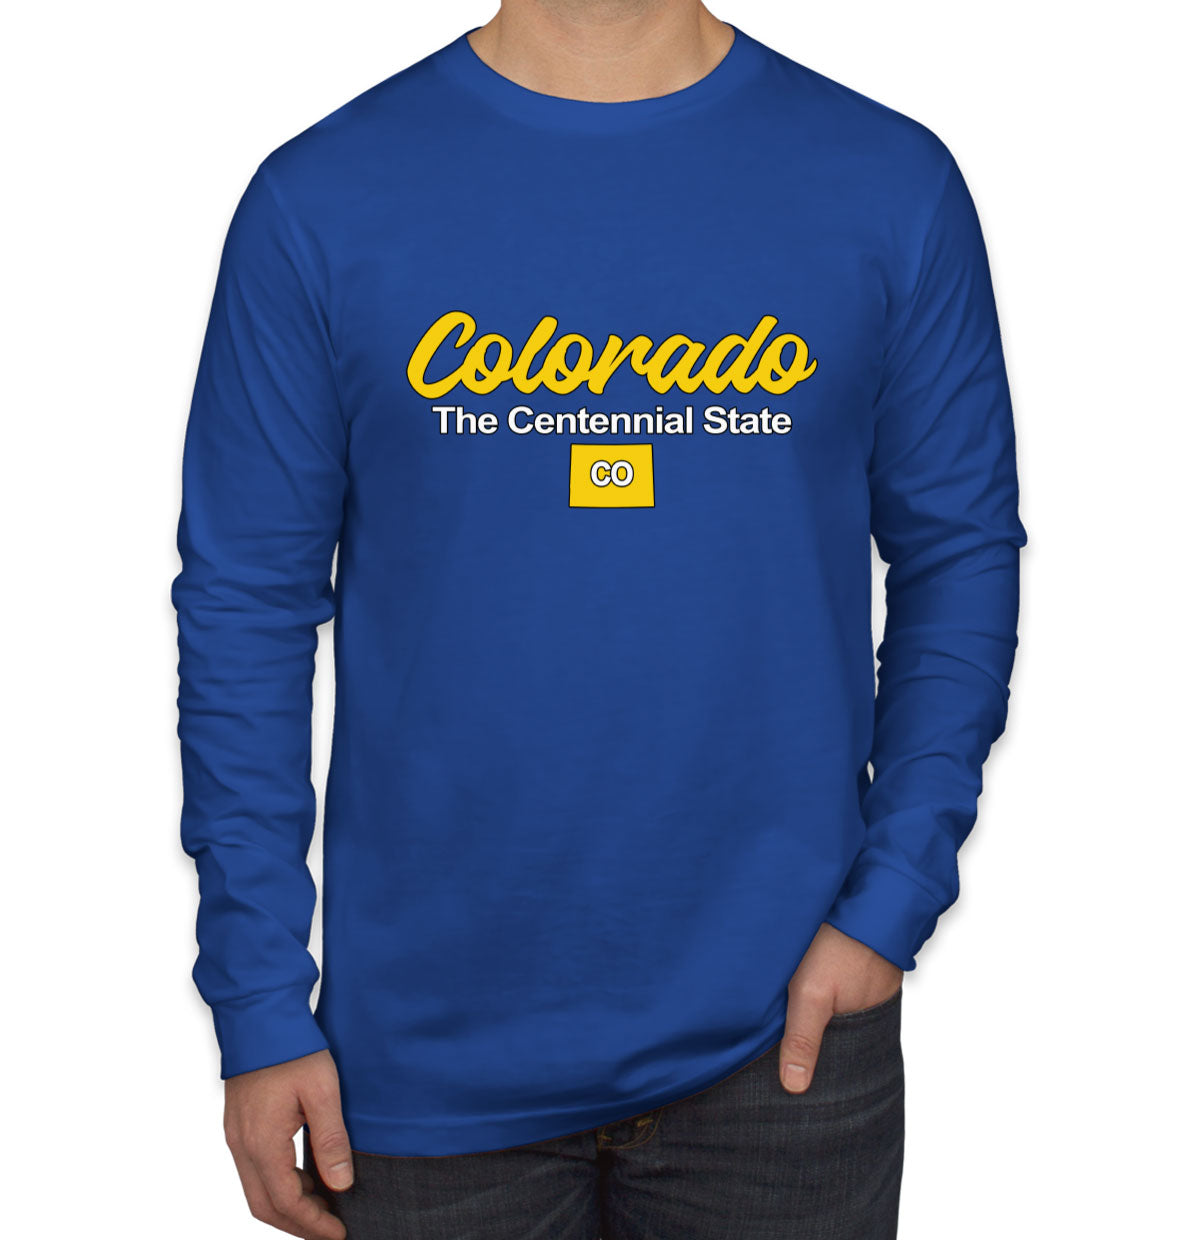 Colorado The Centennial State Men's Long Sleeve Shirt